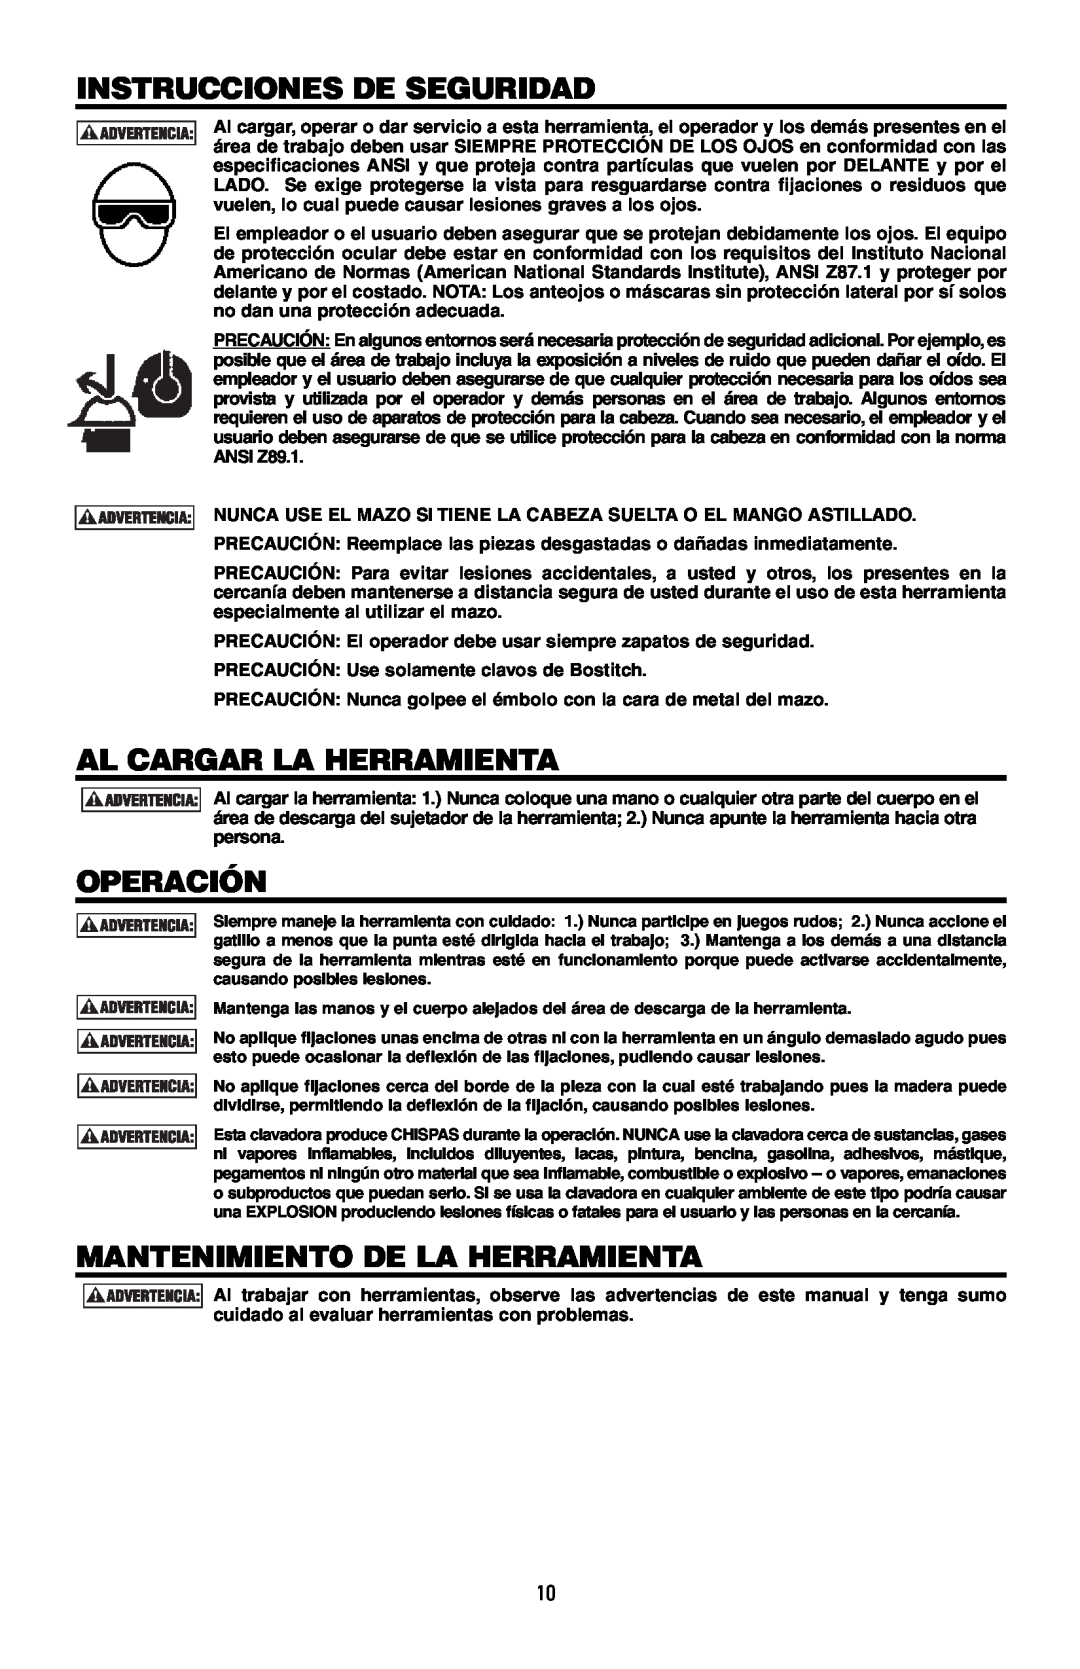 Bostitch MFN-200 manual Instrucciones De Seguridad, Al Cargar La Herramienta, Operación, Mantenimiento De La Herramienta 